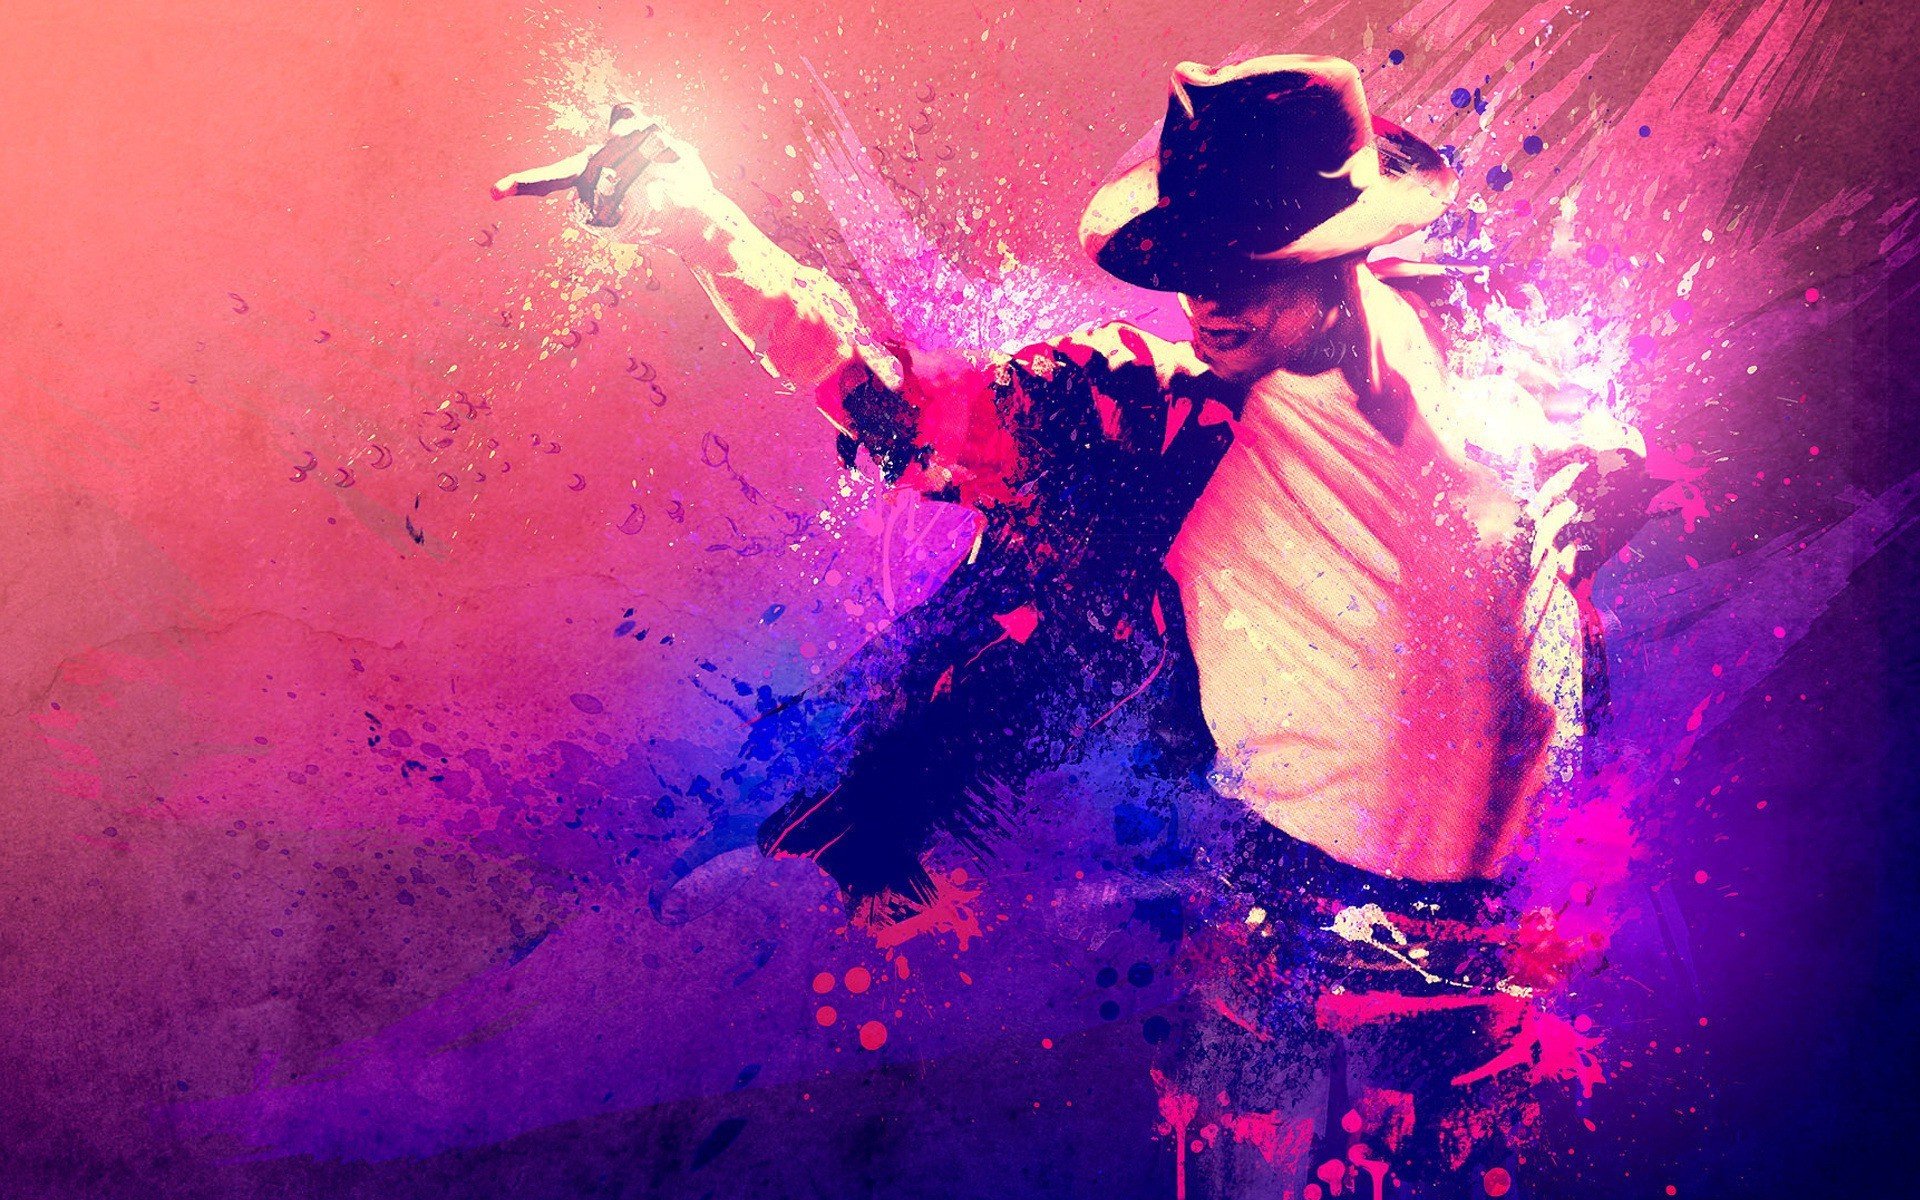 Michael Jackson, Singer, Paint splatter Wallpaper